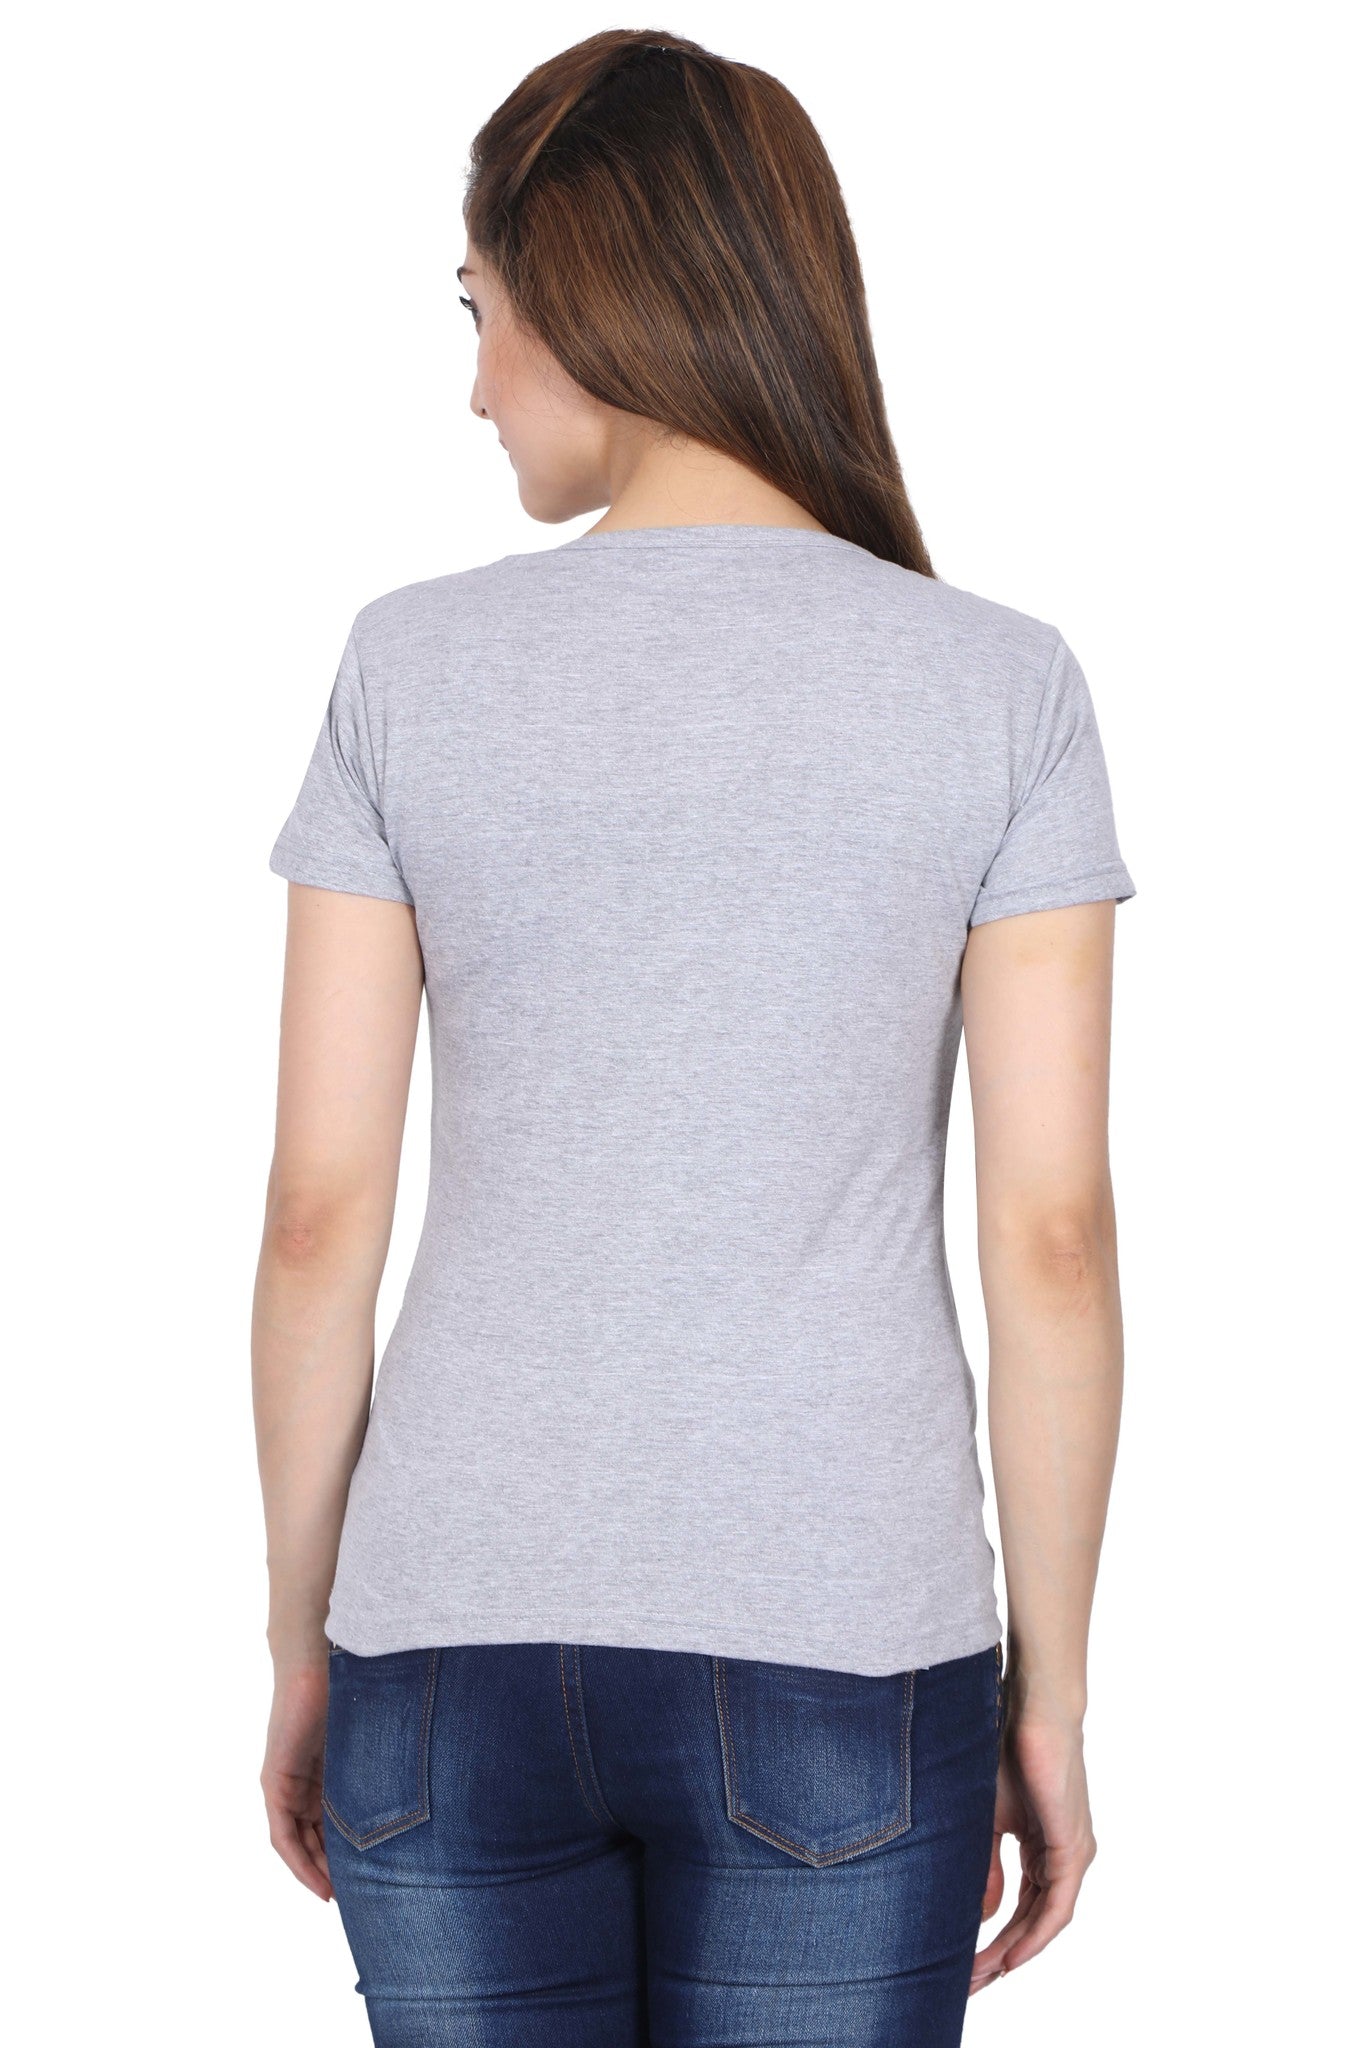 Women's Cotton Chest Printed Round Neck Half Sleeve T-Shirt